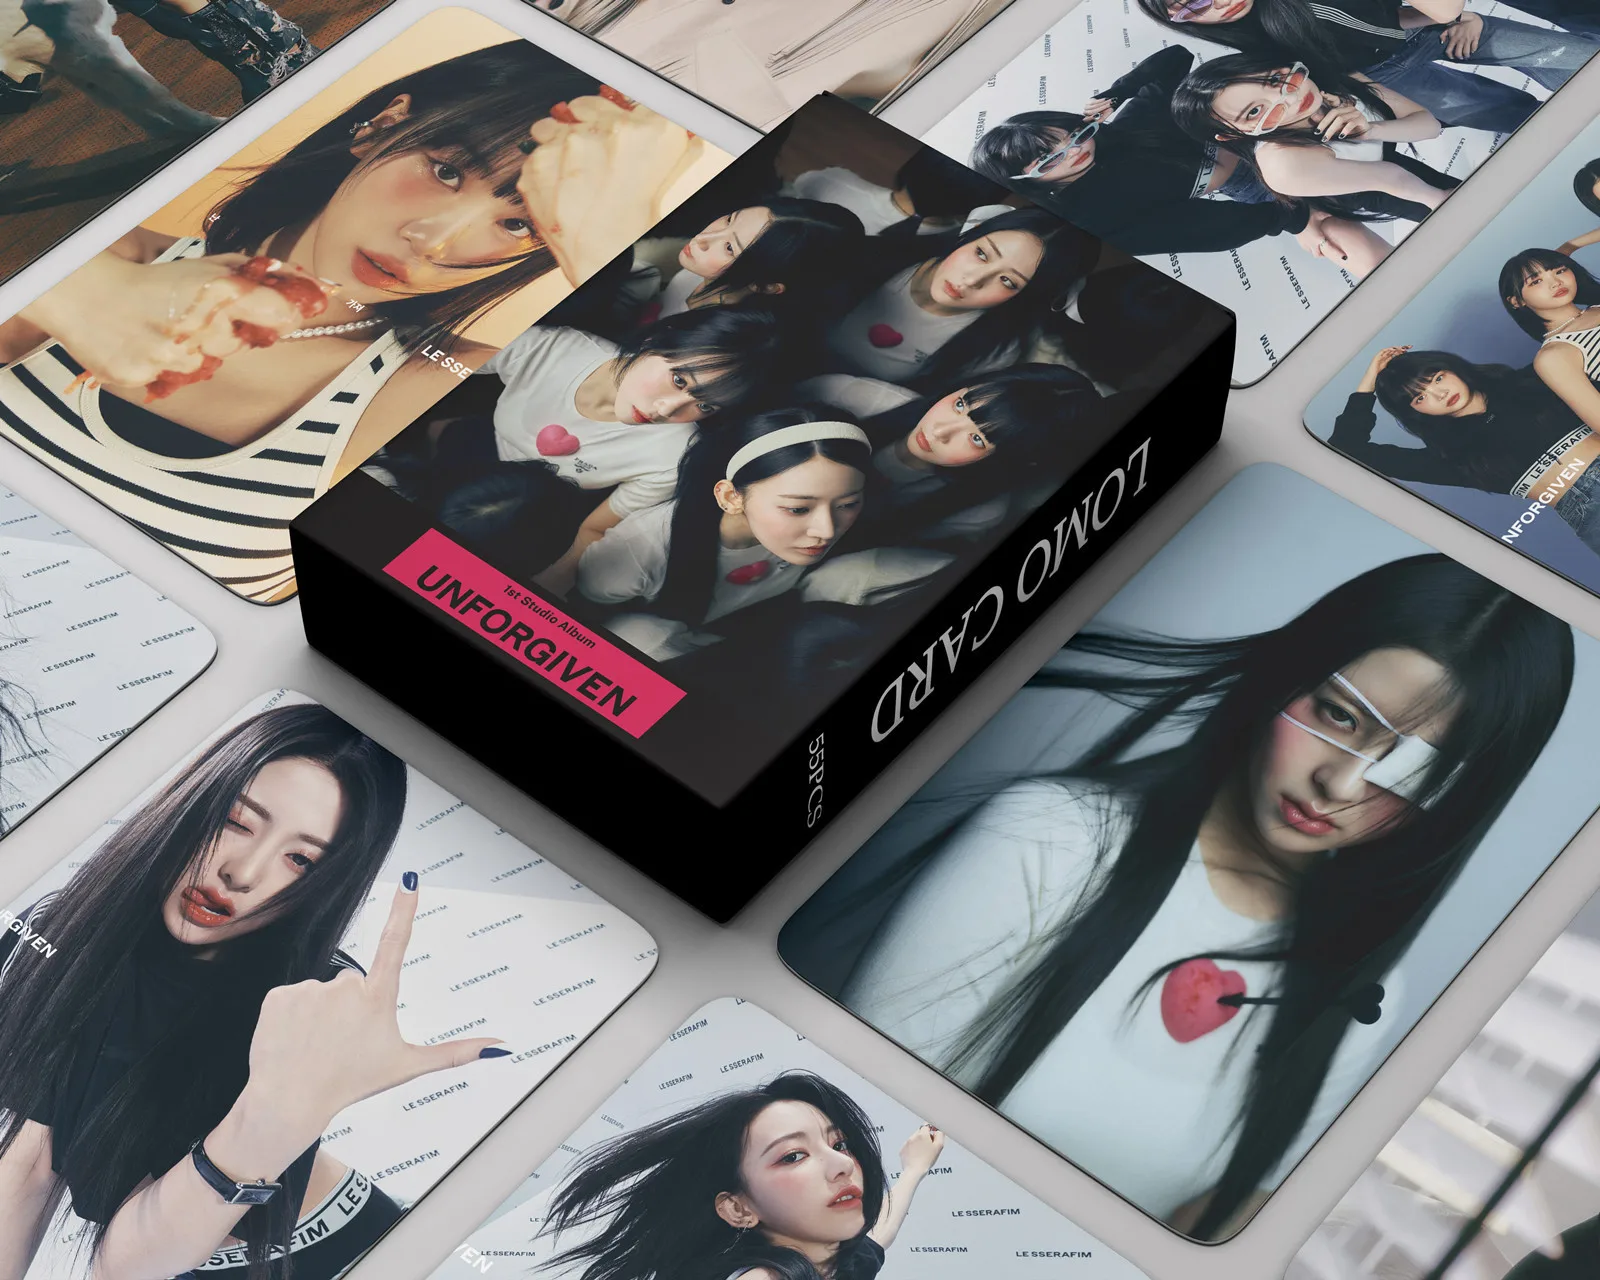 

55Pcs/Set Kpop Idol LE SSERAFIM Lomo Card UNFORGIVEN Postcard Album New Photo Print Cards Picture Fans Collection Gifts